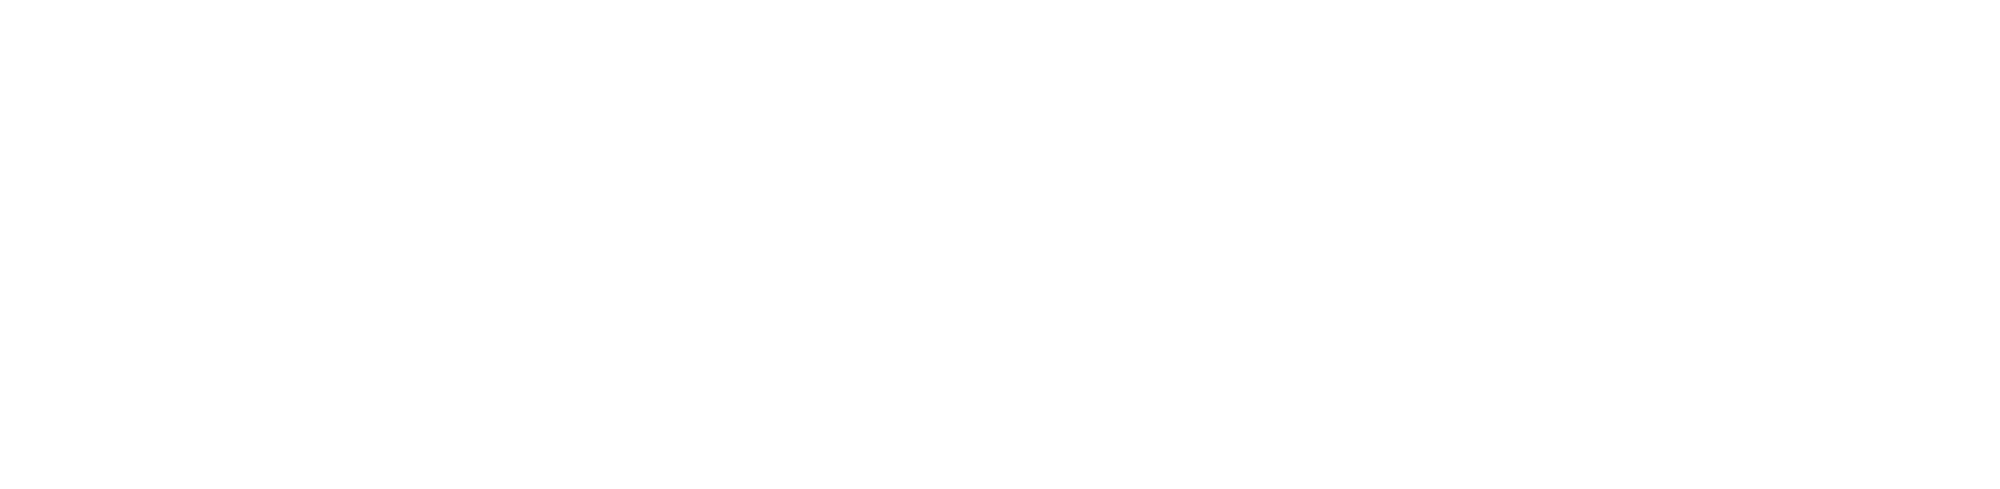 No1 NOSTALGIQUE DEAUVILLE Plage de Deauville AUTUMNWINTER COLLECTION 2019-2020